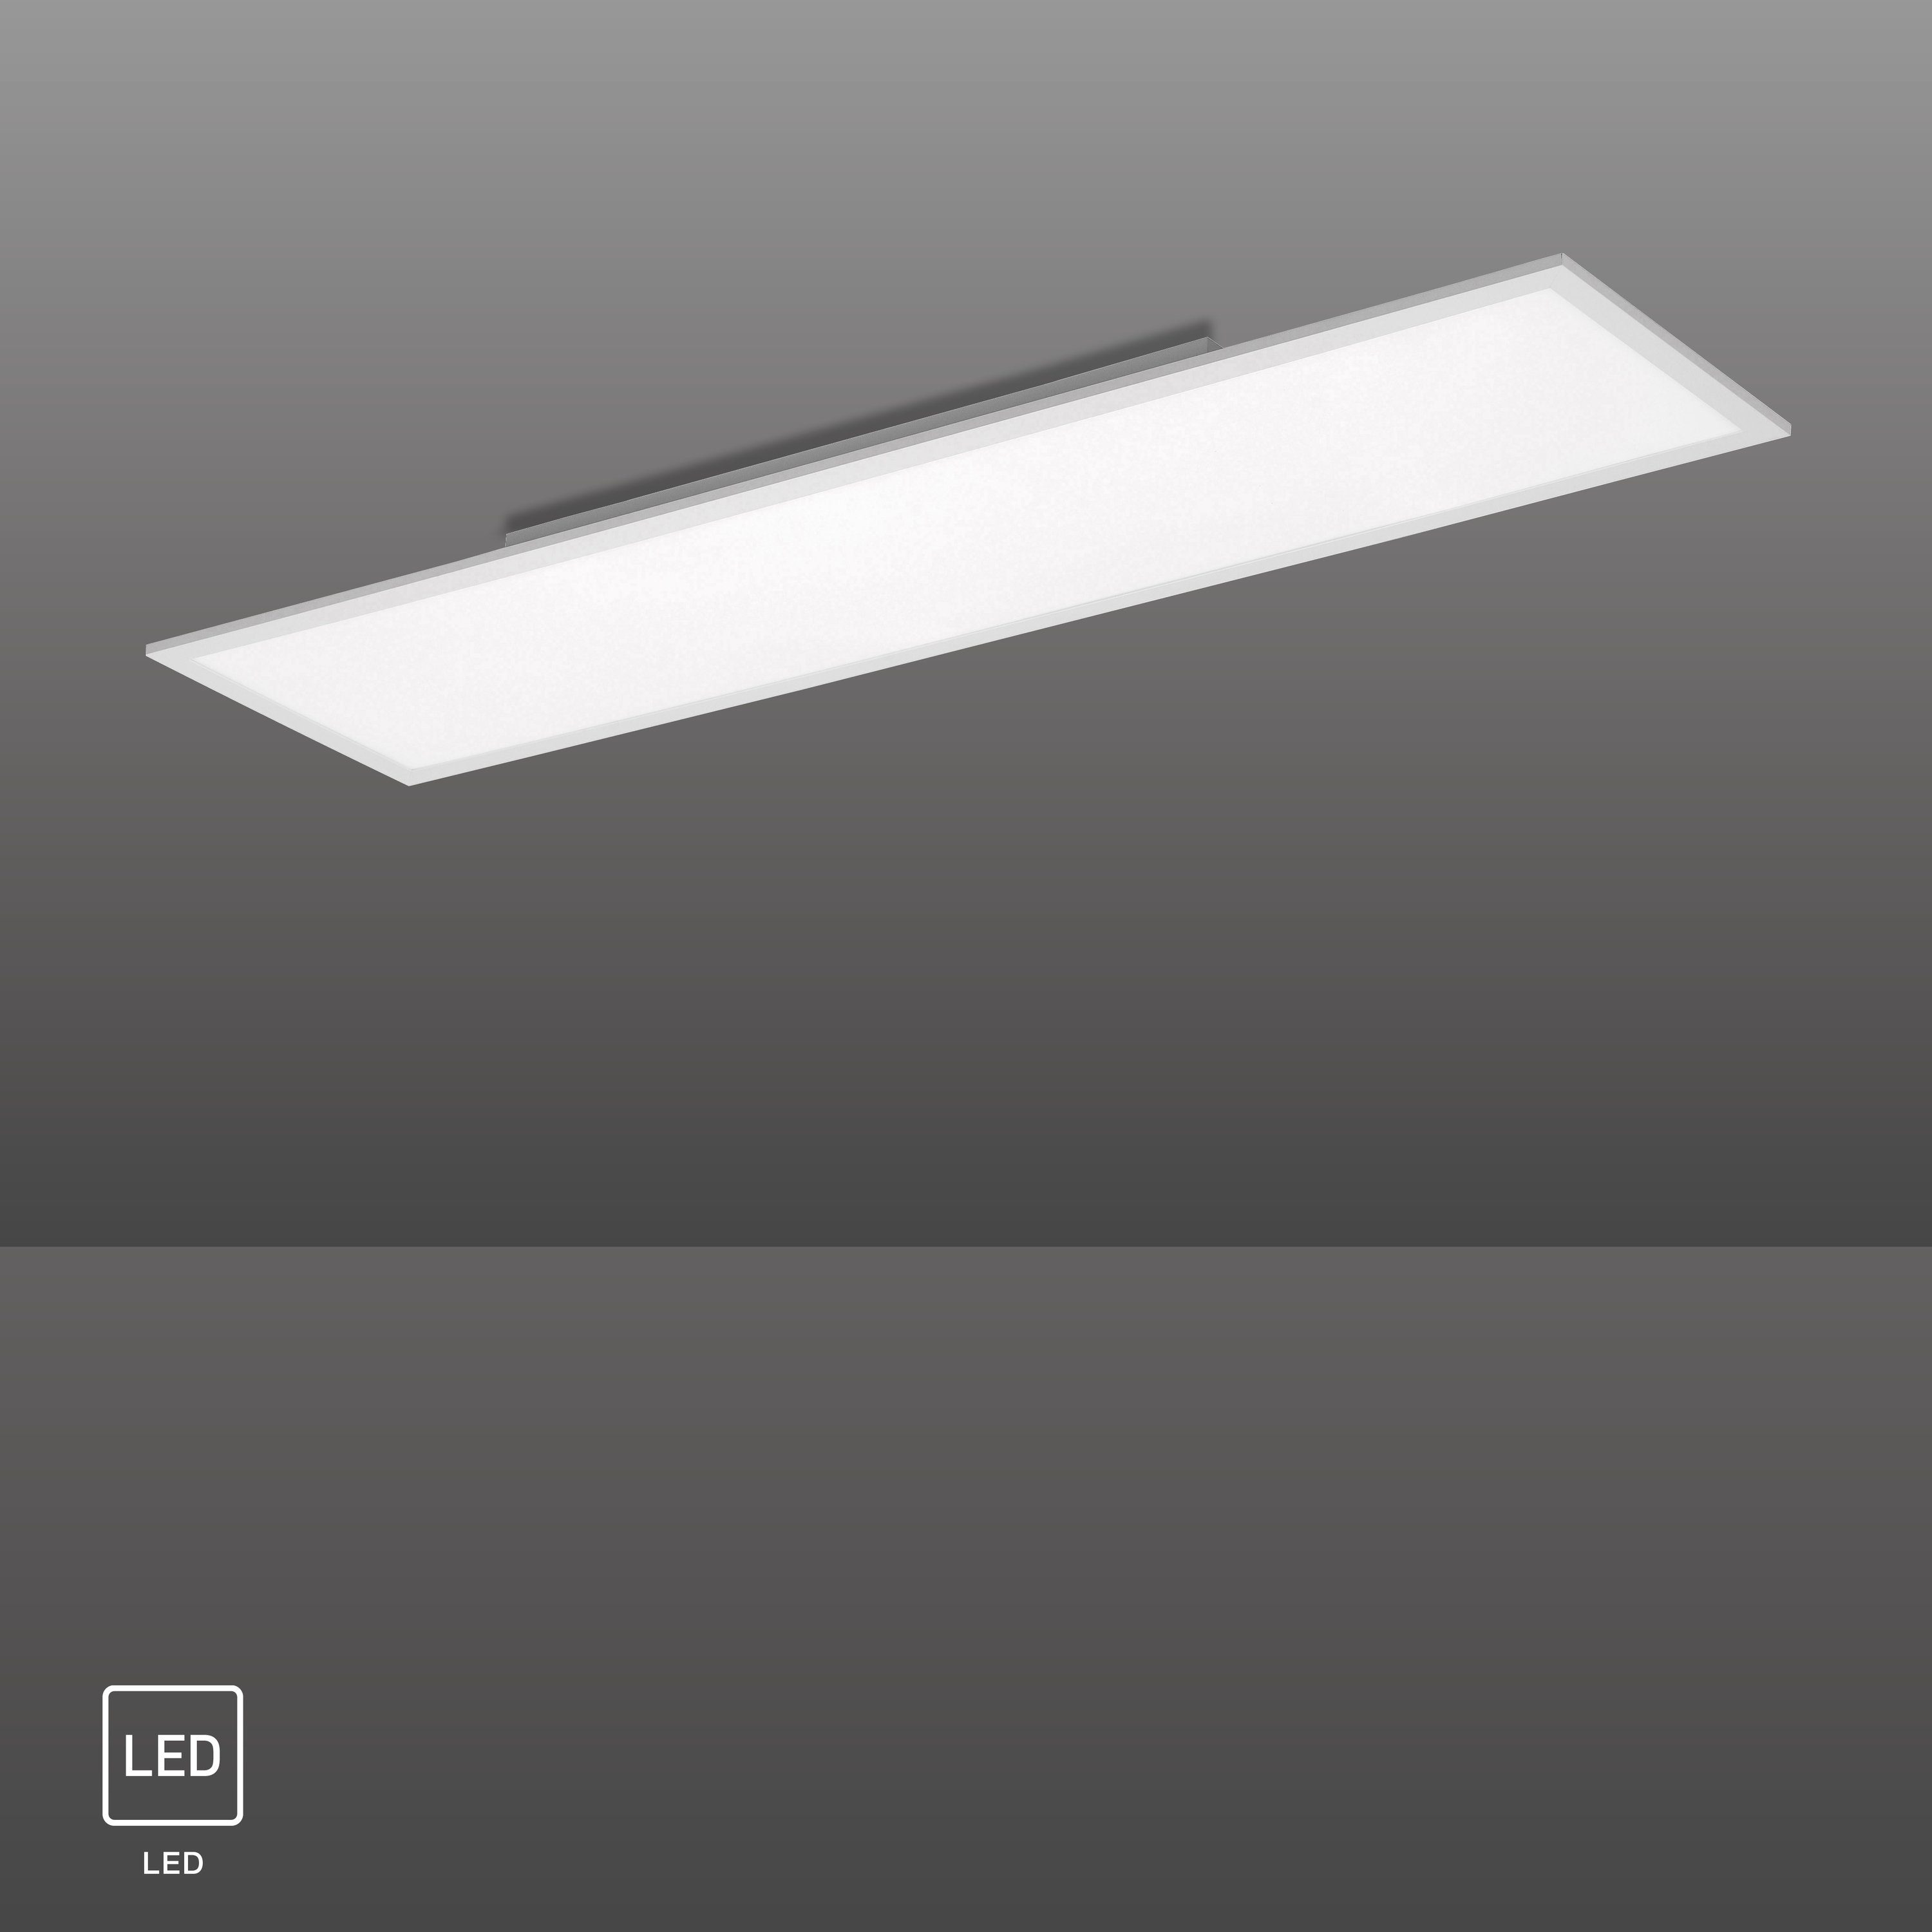 SellTec LED Deckenleuchte LED weiße 120x30cm, tageslichtweiß, Watt, Lumen 40 1xLED-Board/ Panel rechteckig, neutralweiß, durch FLAT Licht blendfreies Lichtfarbe Angenehmes, Kunststoffabeckung, 4000